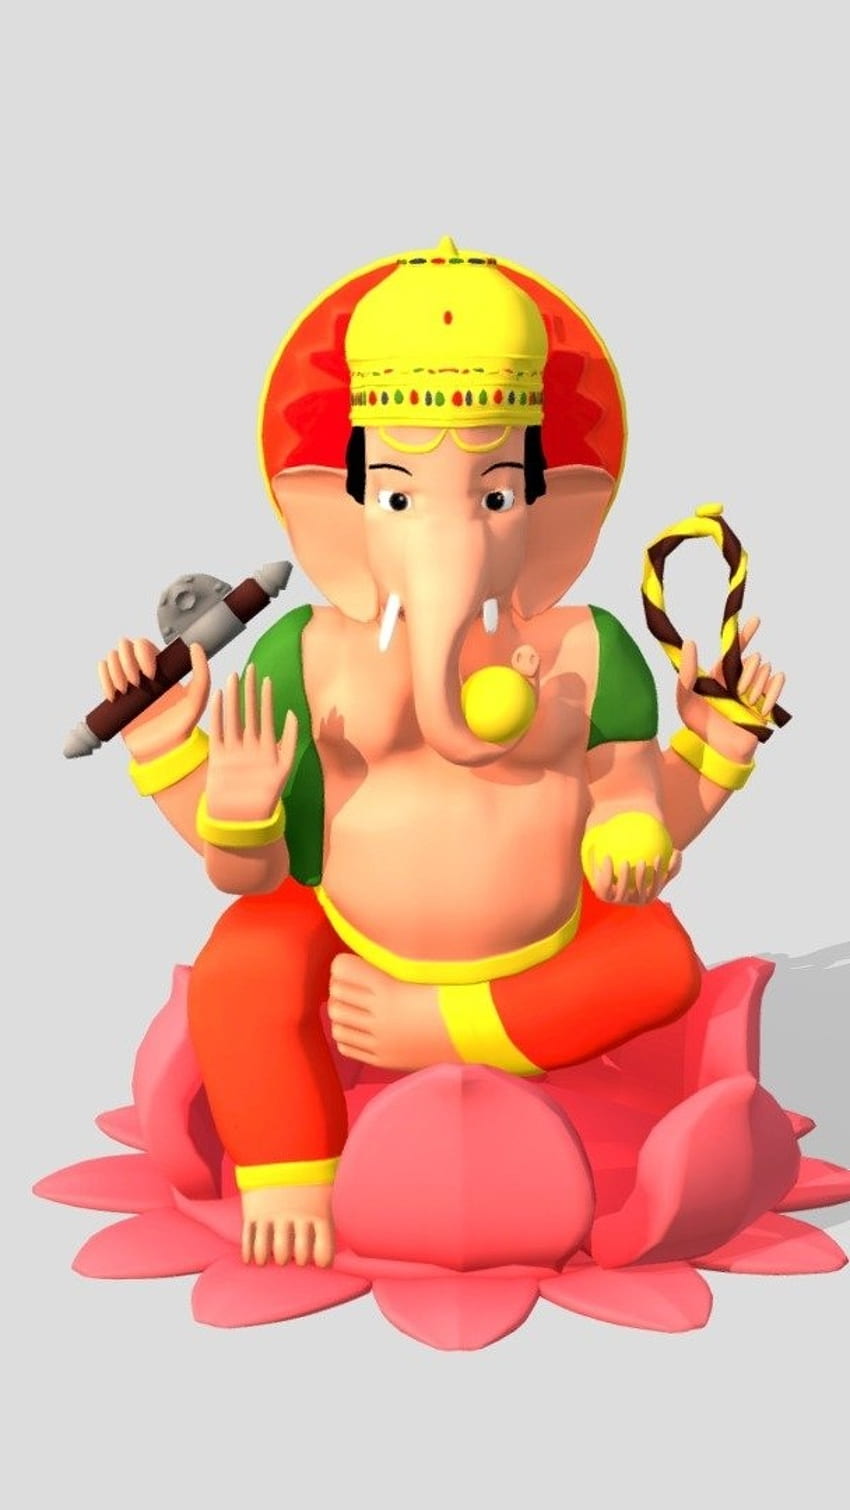 Hình nền Ganesh đem lại cho chúng ta một sự bình yên và thanh tịnh. Những hình ảnh về vị thần Ganesha với các sắc màu rực rỡ và phong cách thiết kế tuyệt đẹp đang chờ đón những ai đam mê.